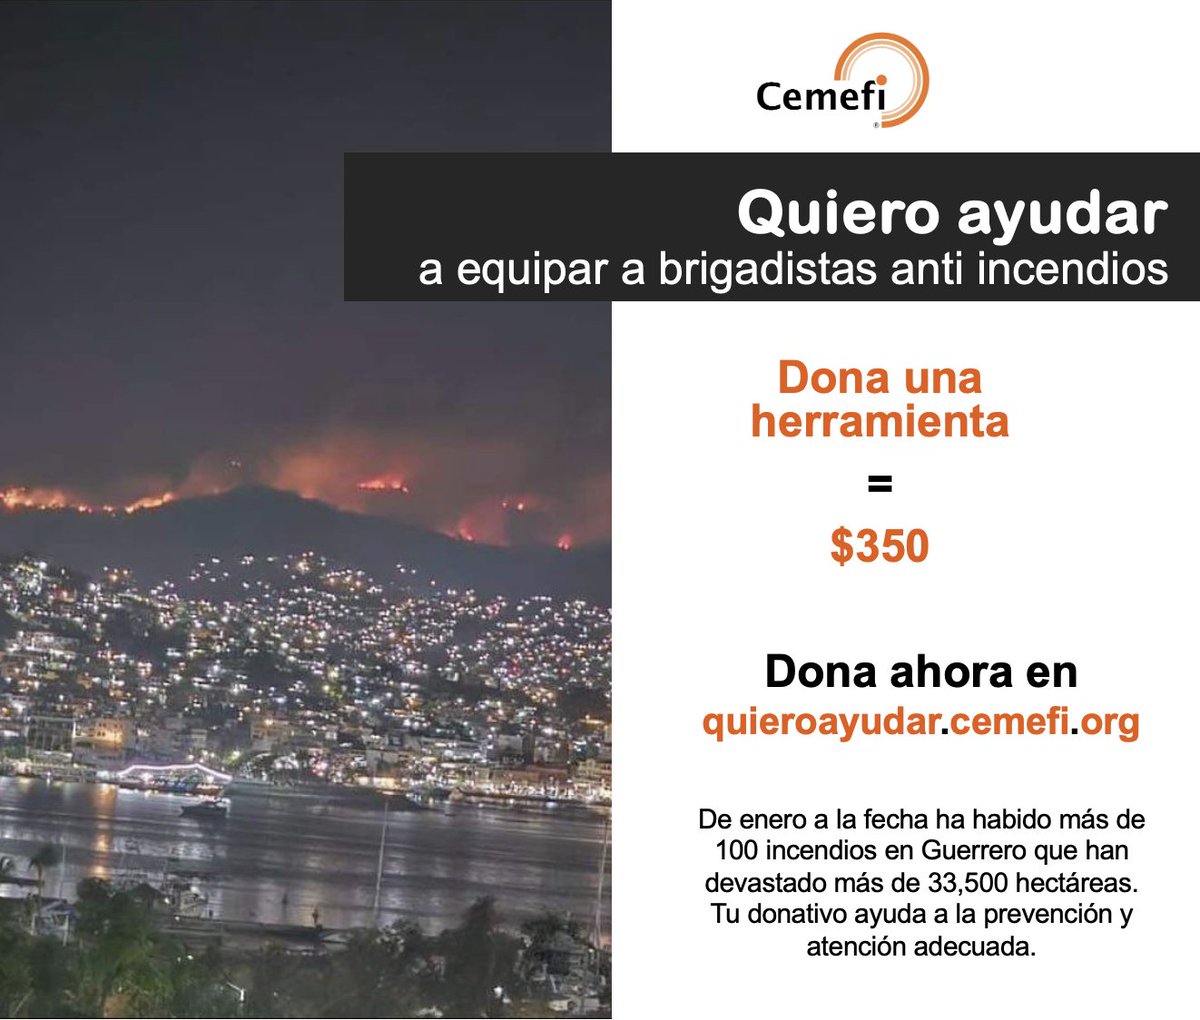 #GuerreroTeNecesita 🧡 🔥 Más de 100 incendios han devastado 40 mil hectáreas. 🌱⁠Menos árboles es igual a menos alimentos, menos agua y menos salud. 🙏 Entra a quieroayudar.cemefi.org y realiza un donativo para equipar a brigadistas voluntarios. #AcuérdateDeAcapulco #Cemefi